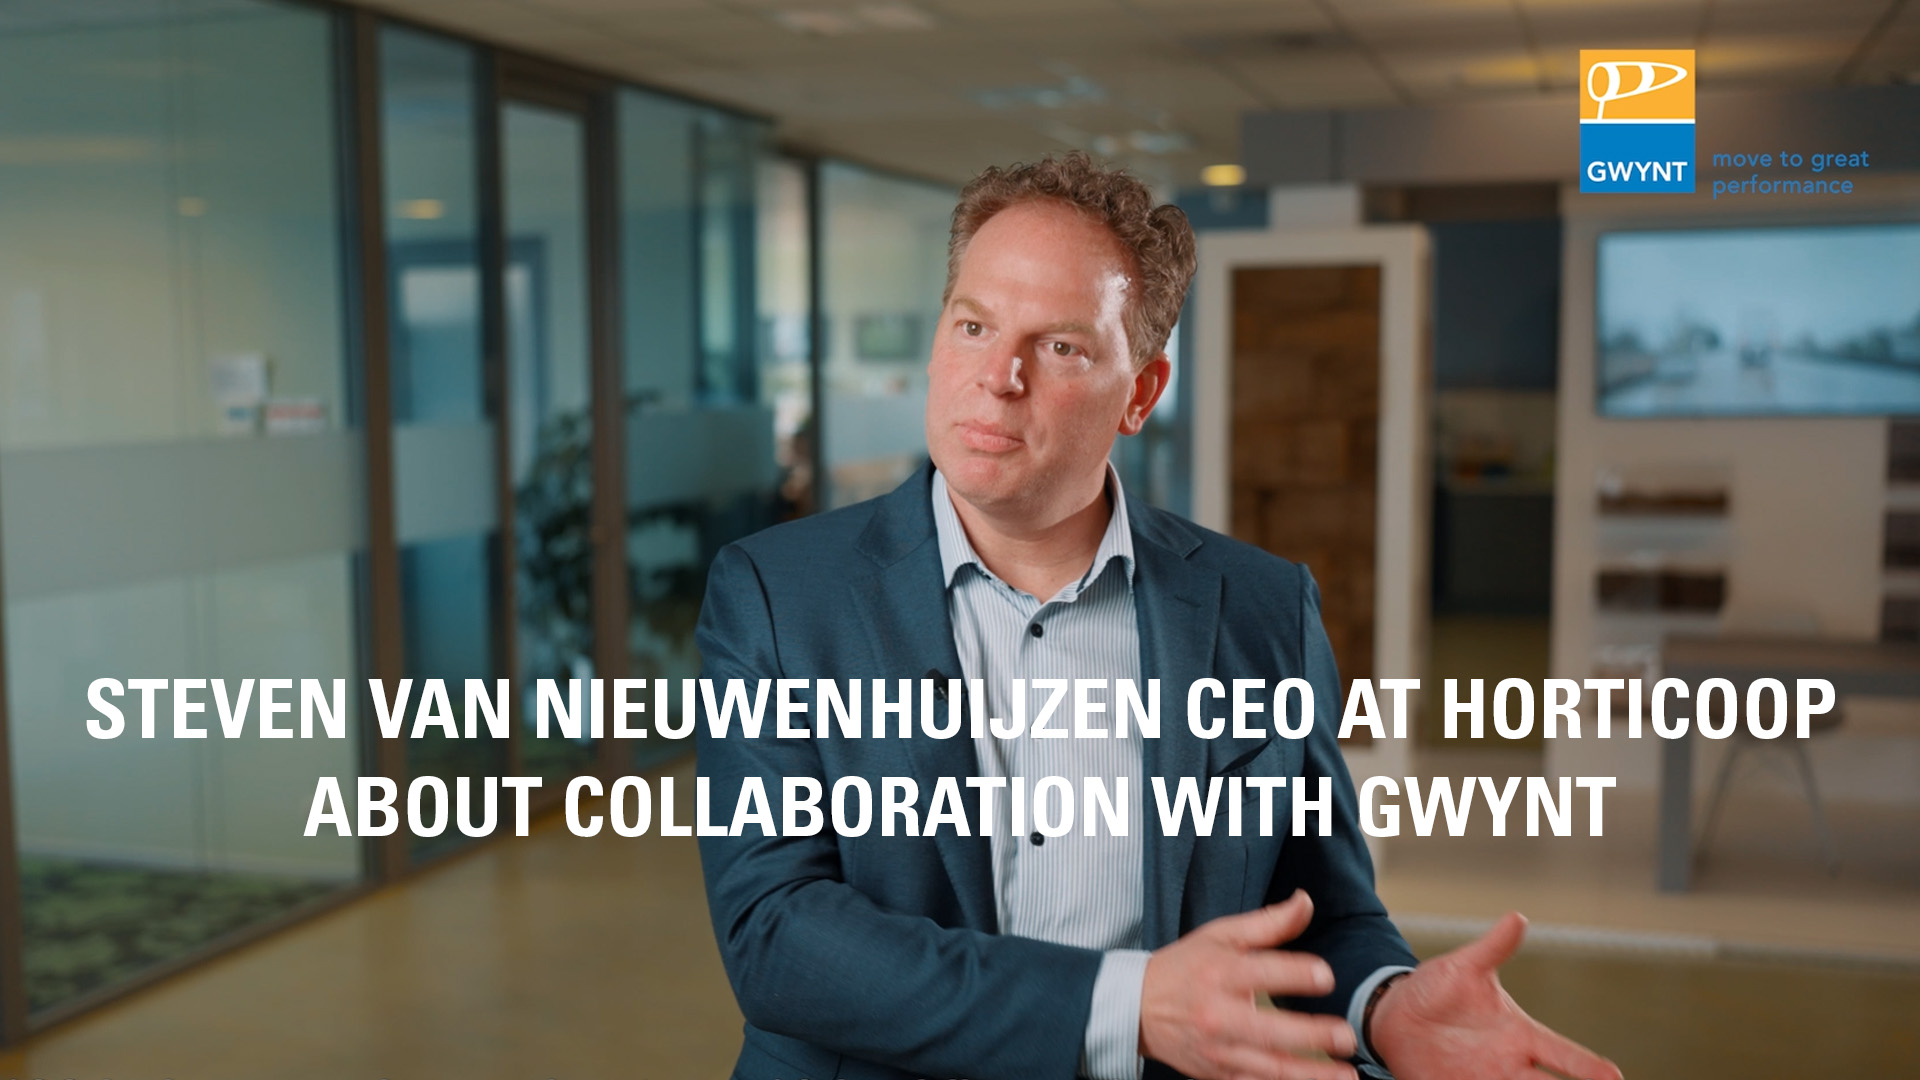 Steven van Nieuwenhuijzen about collaboration with Gwynt